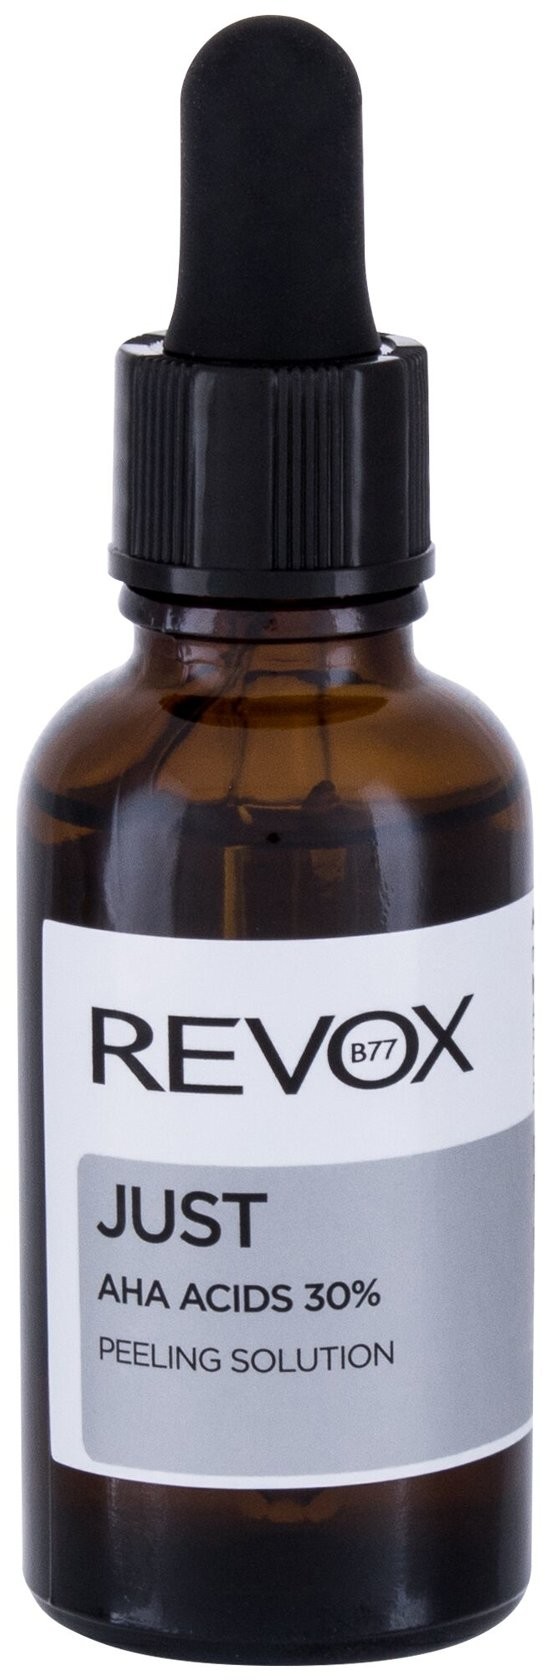 Revox Just Peeling Solution AHA ACIDS 30% 30 ml Peeling